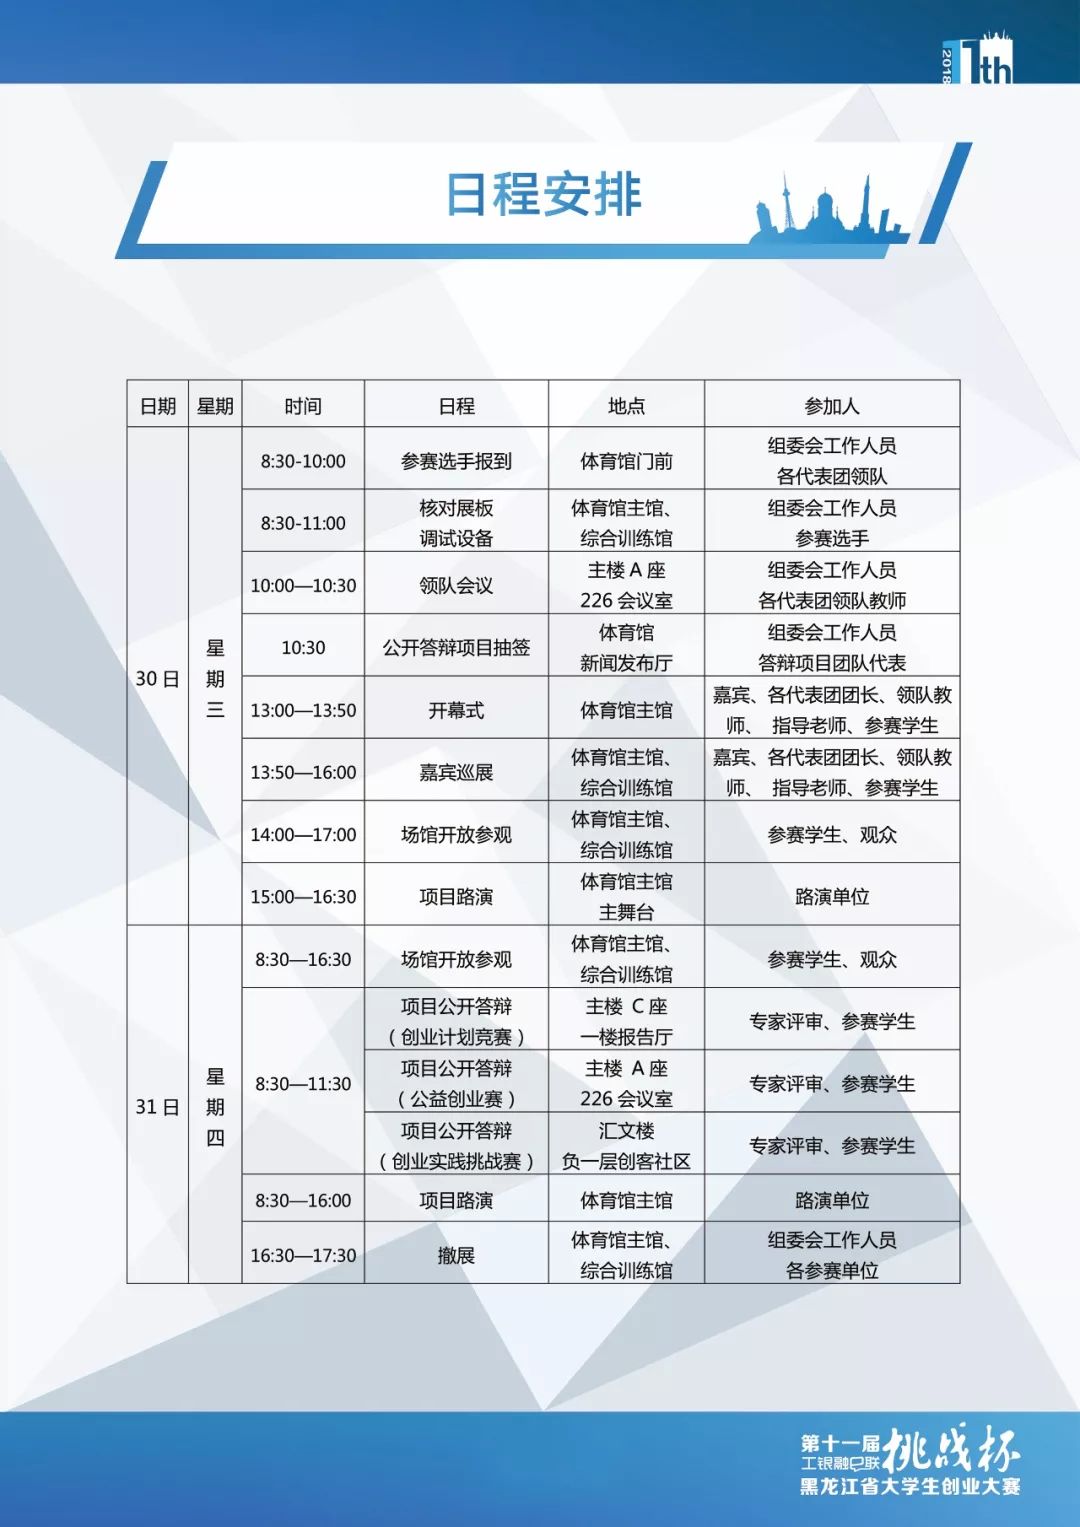 挑战杯|第十一届黑龙江省挑战杯大赛日程安排及注意事项